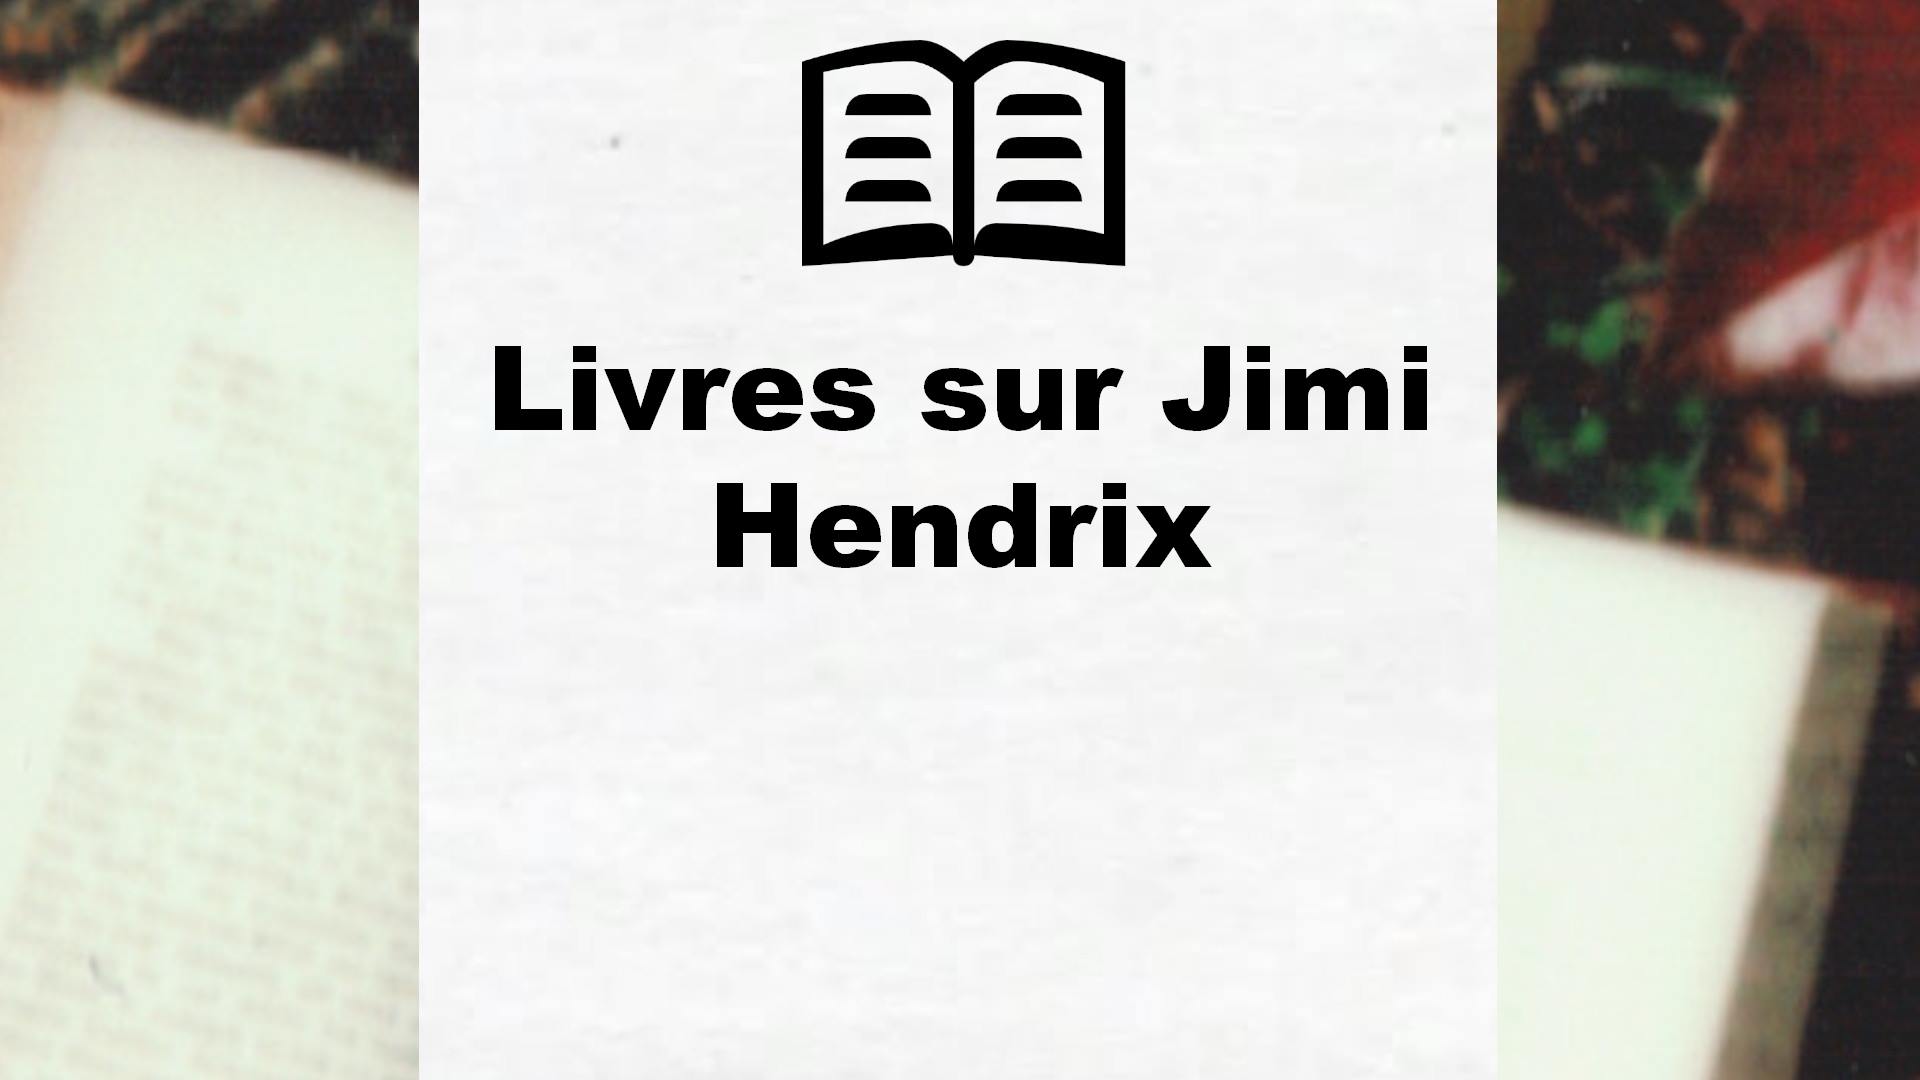 Livres sur Jimi Hendrix